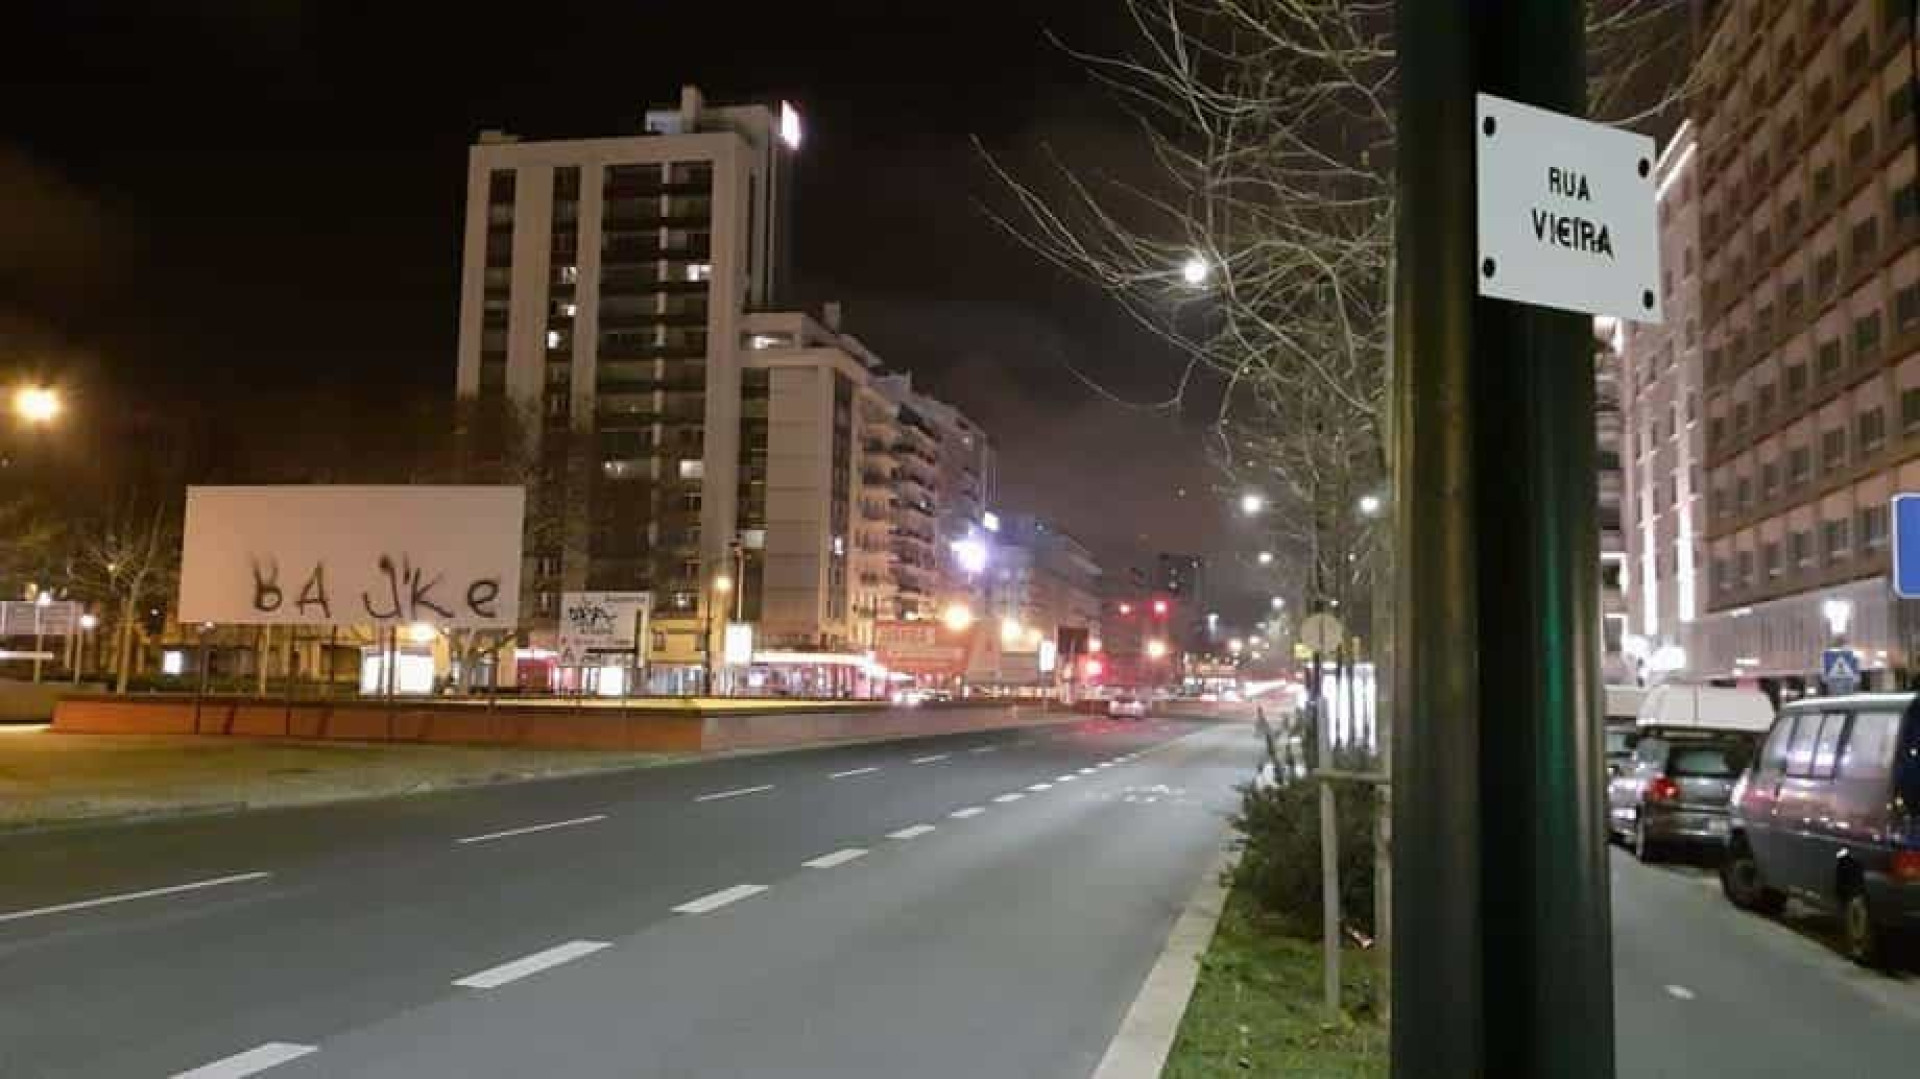 Adeptos do Benfica aumentam contestação e espalham placa "Rua Vi€ira"